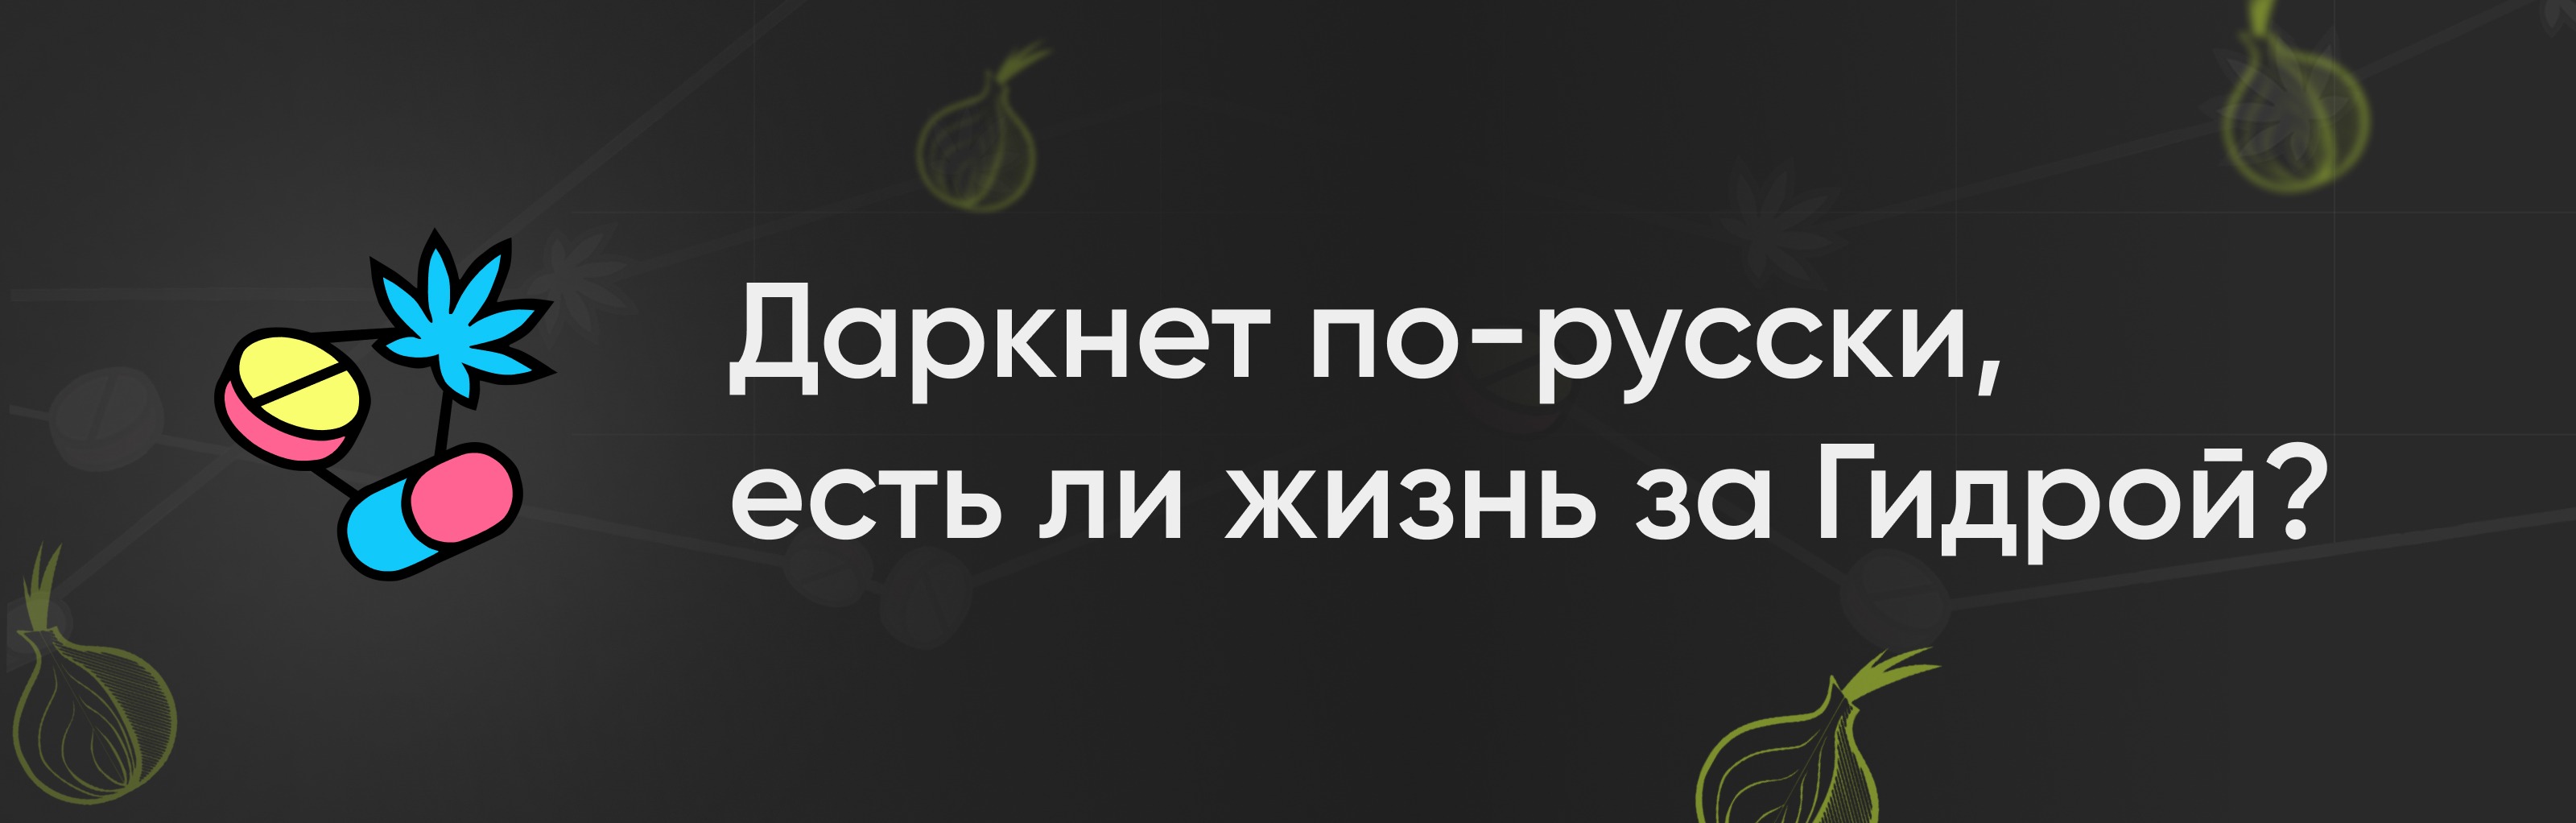 Как сделать blacksprut на русском языке даркнет даркнет список сайтов даркнет